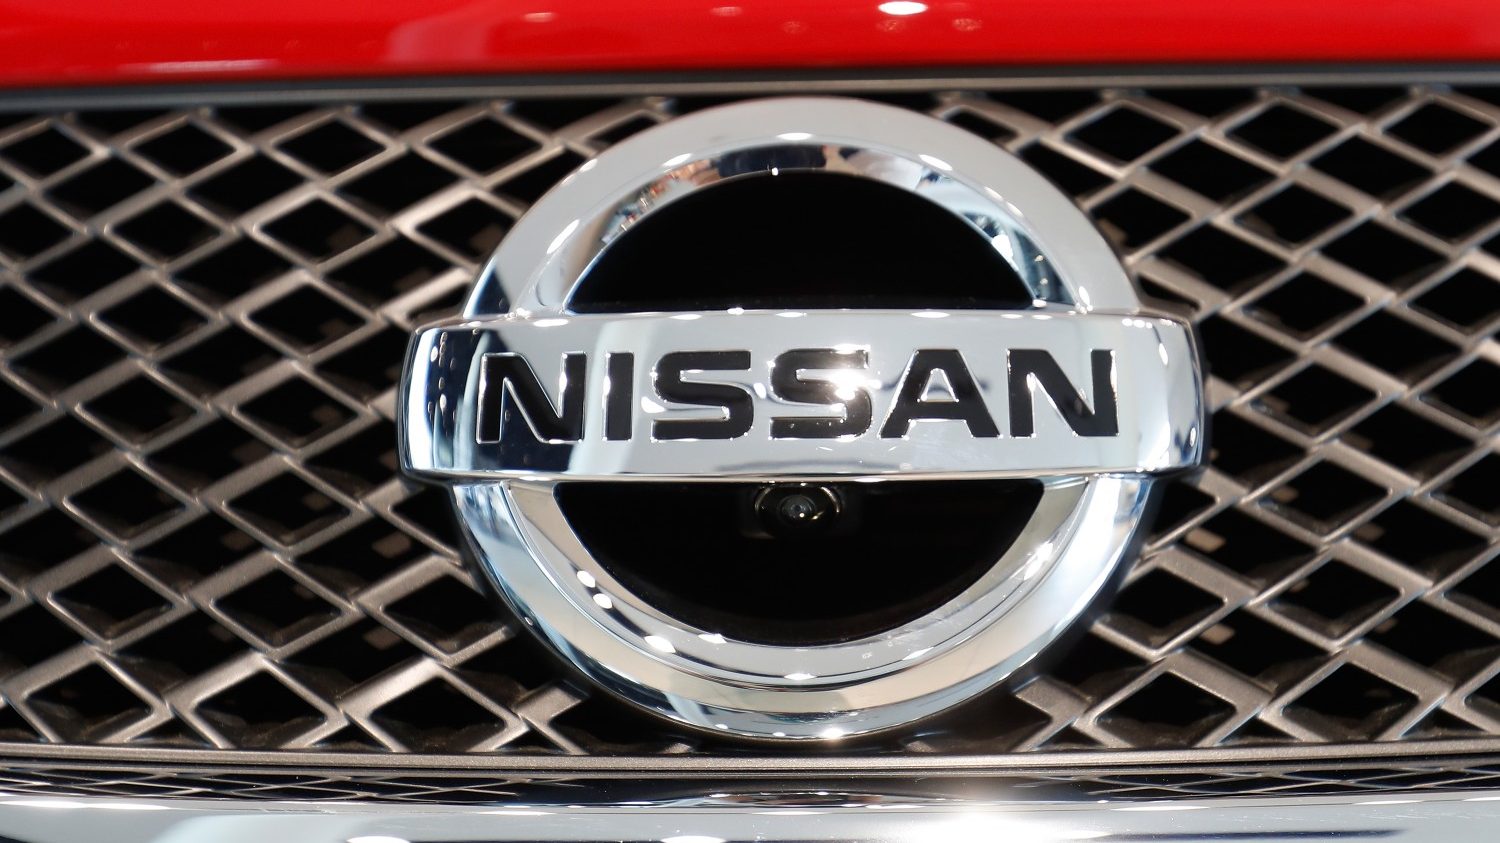 Nissan In Talks With Mitsubishi Motors